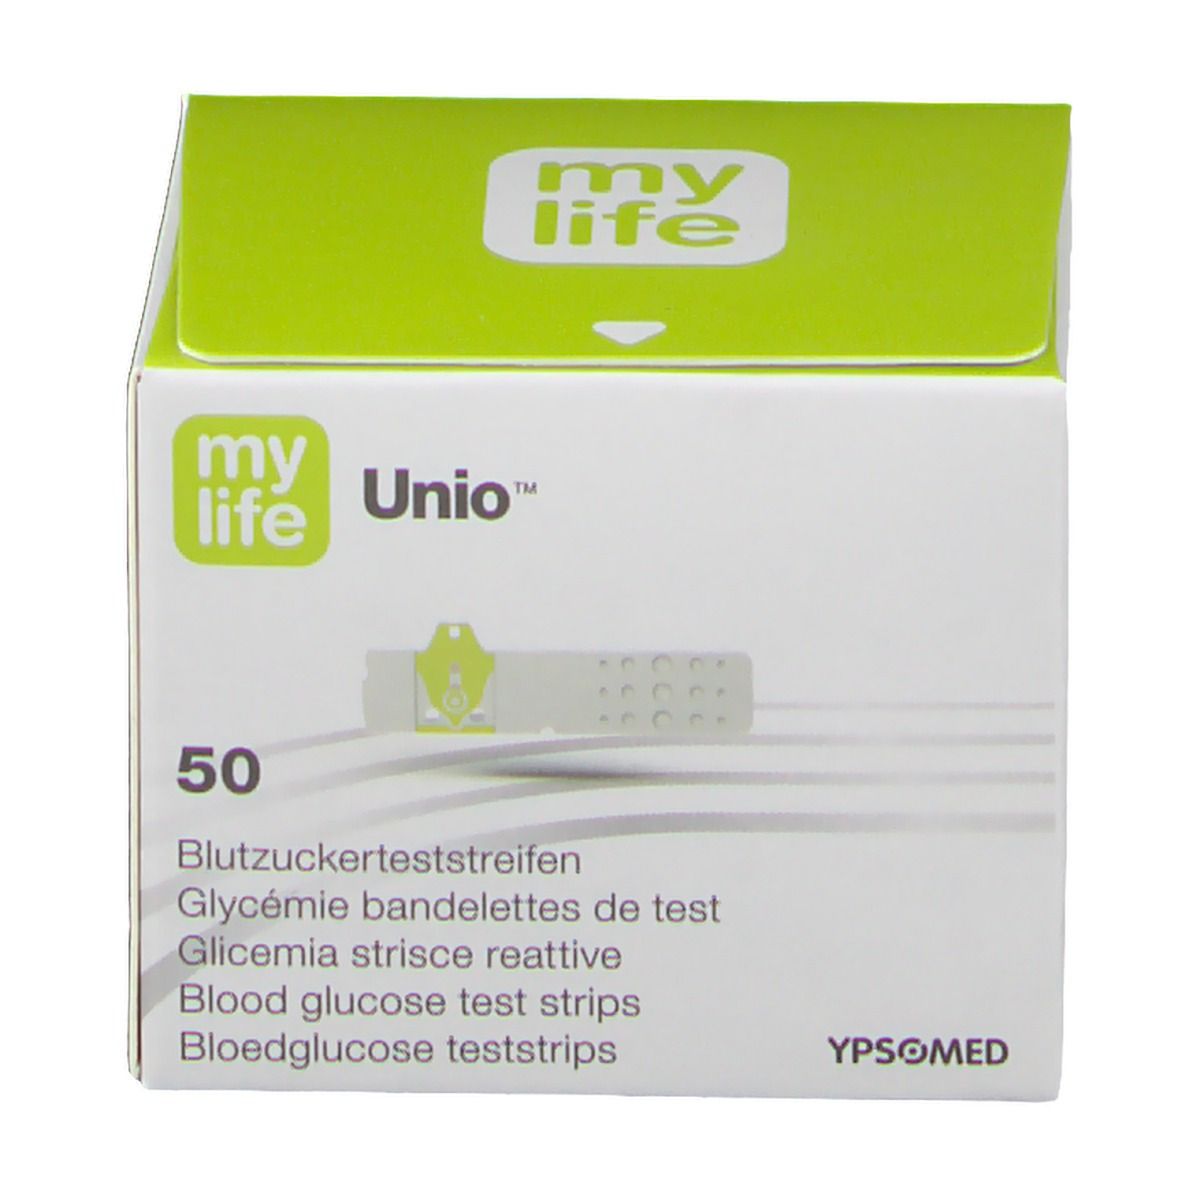 mylife Unio Blutzucker-Teststreifen